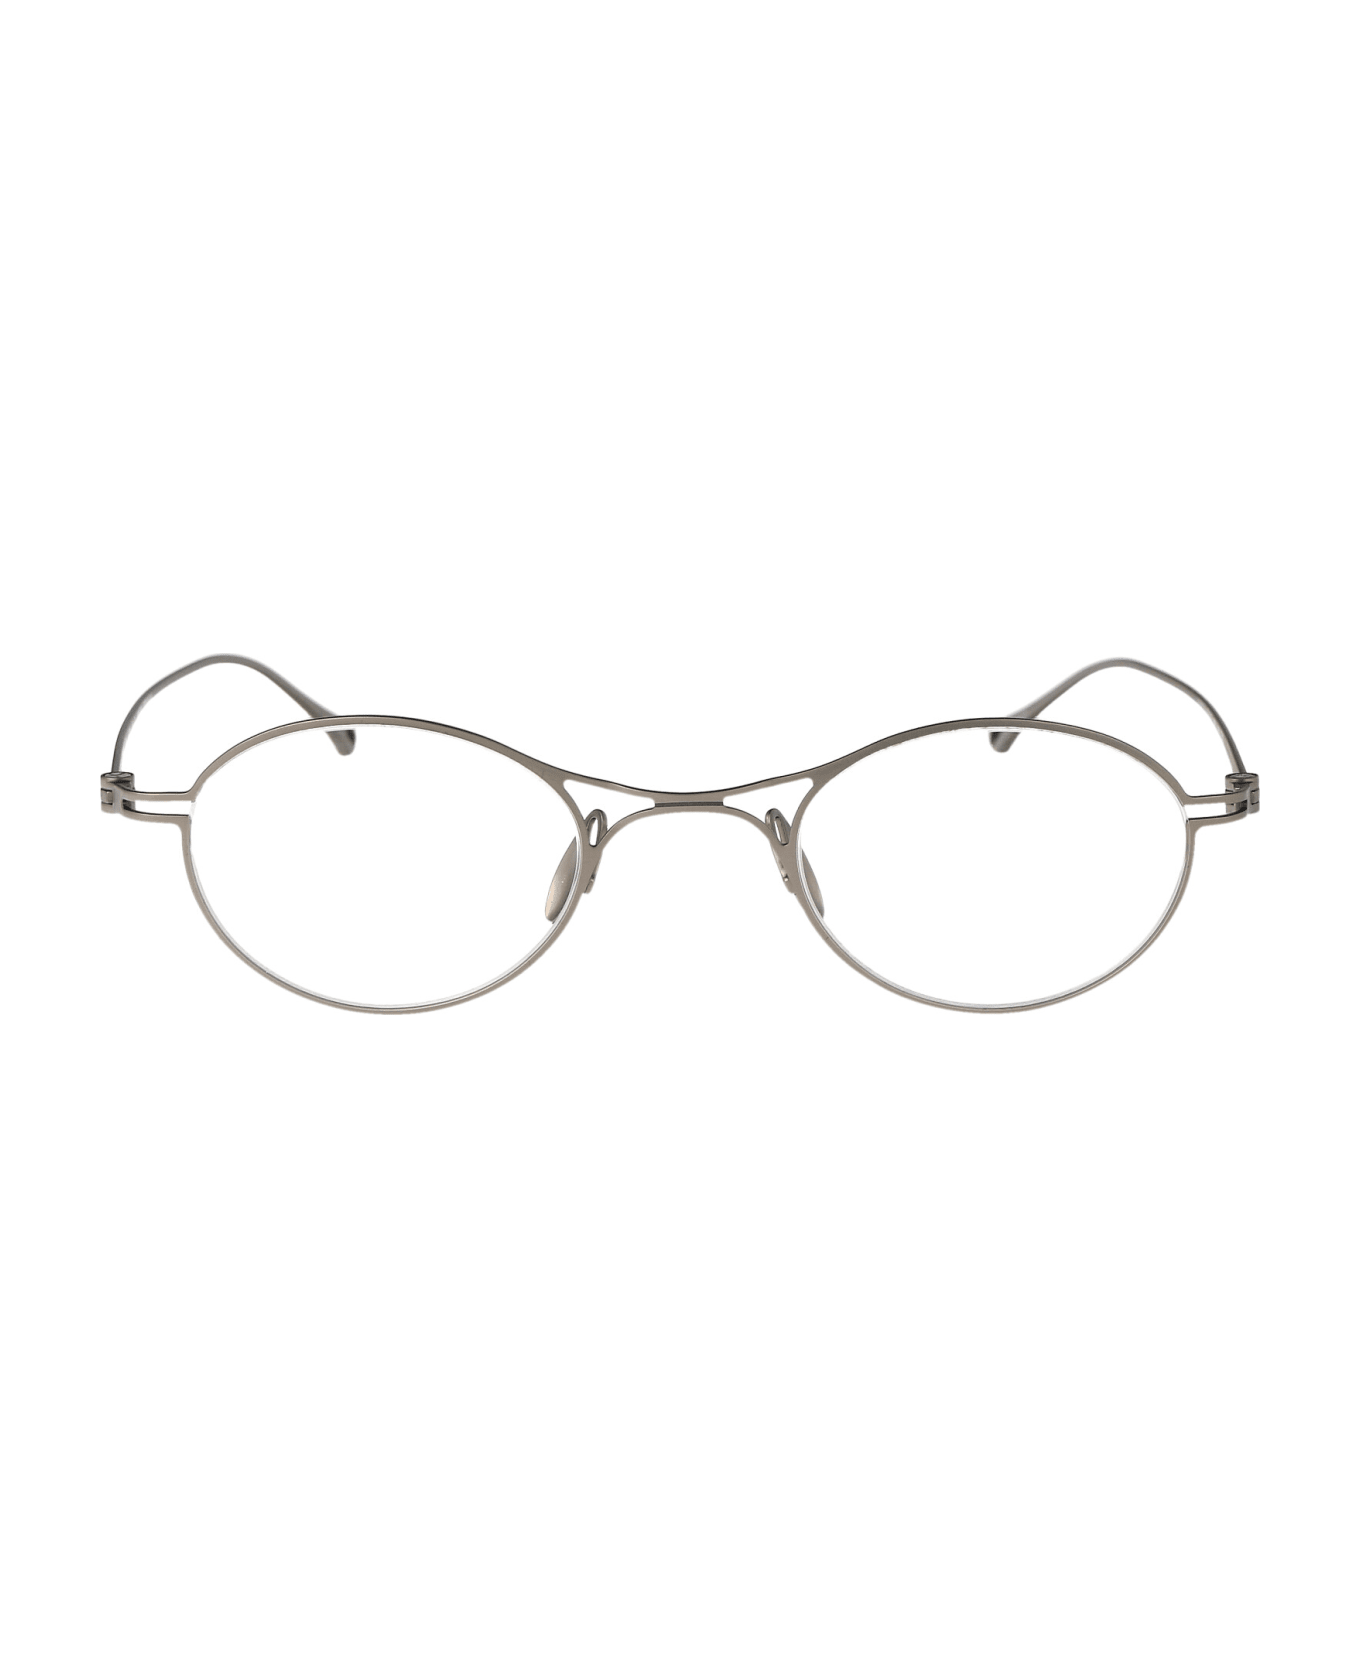 Giorgio Armani 0ar5135t Glasses - 3346 Matte Silver アイウェア